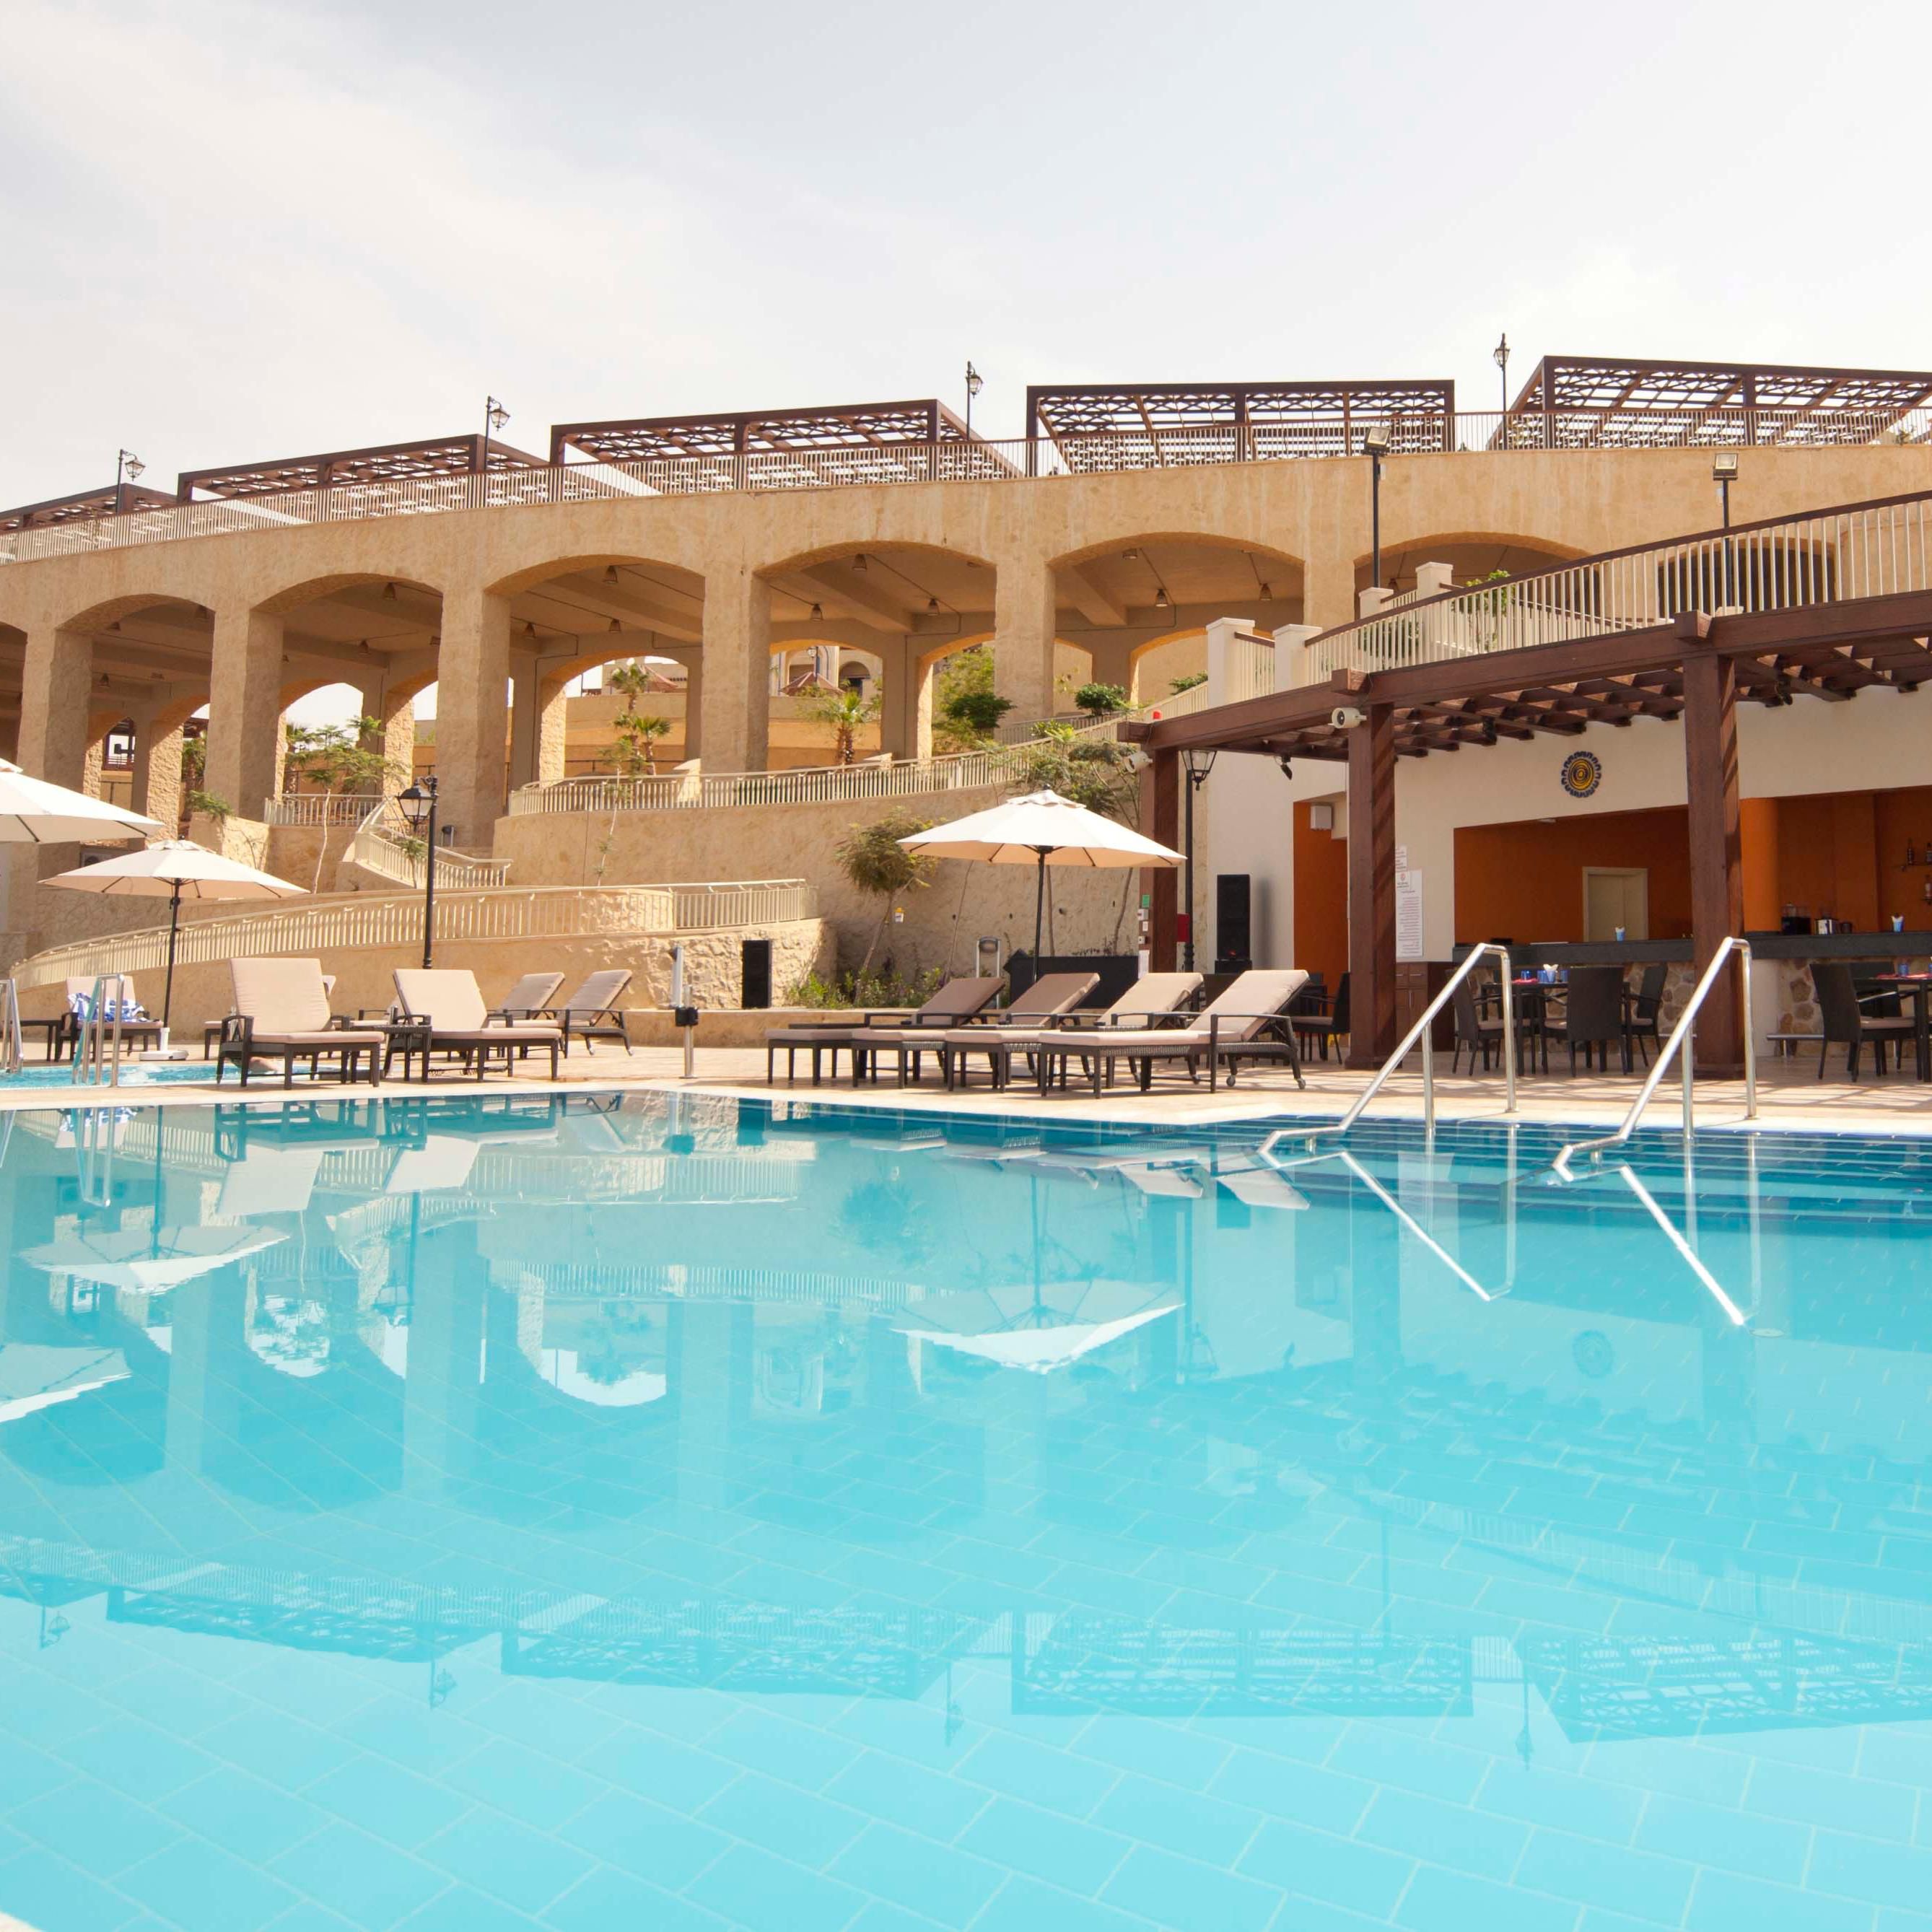 Enjoy a refreshing swim at El Grito heated pool